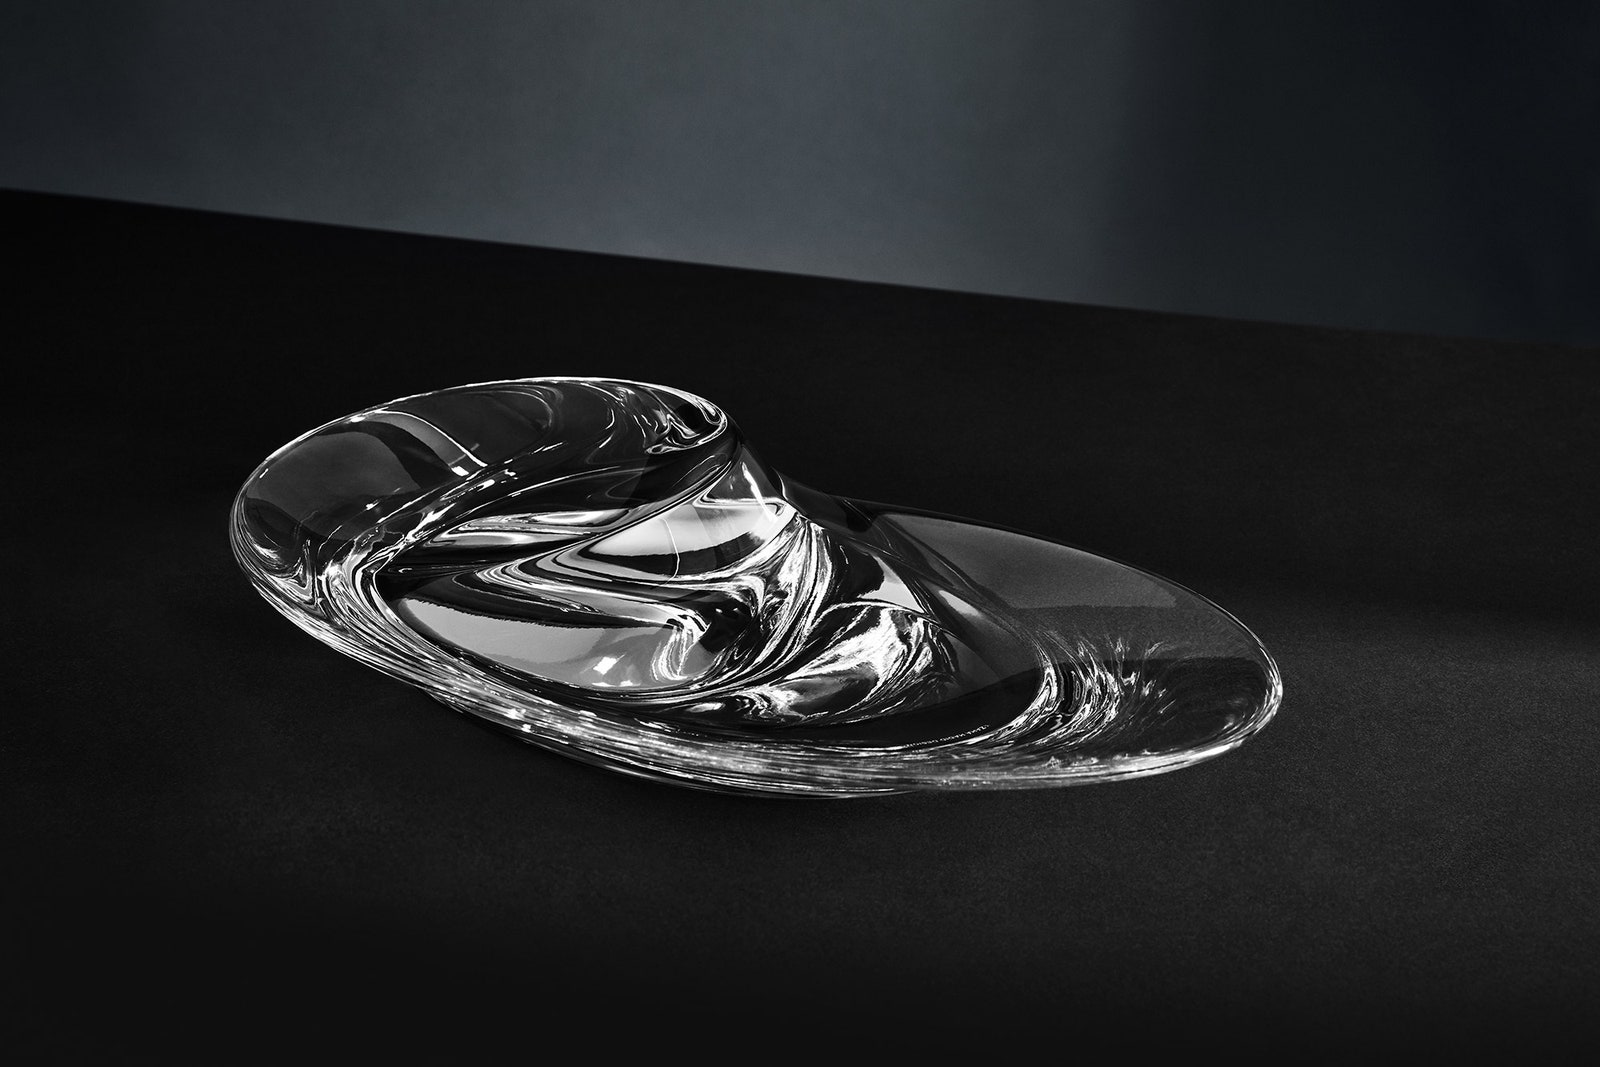 Неожиданное в обычном новая коллекция посуды от Zaha Hadid Design